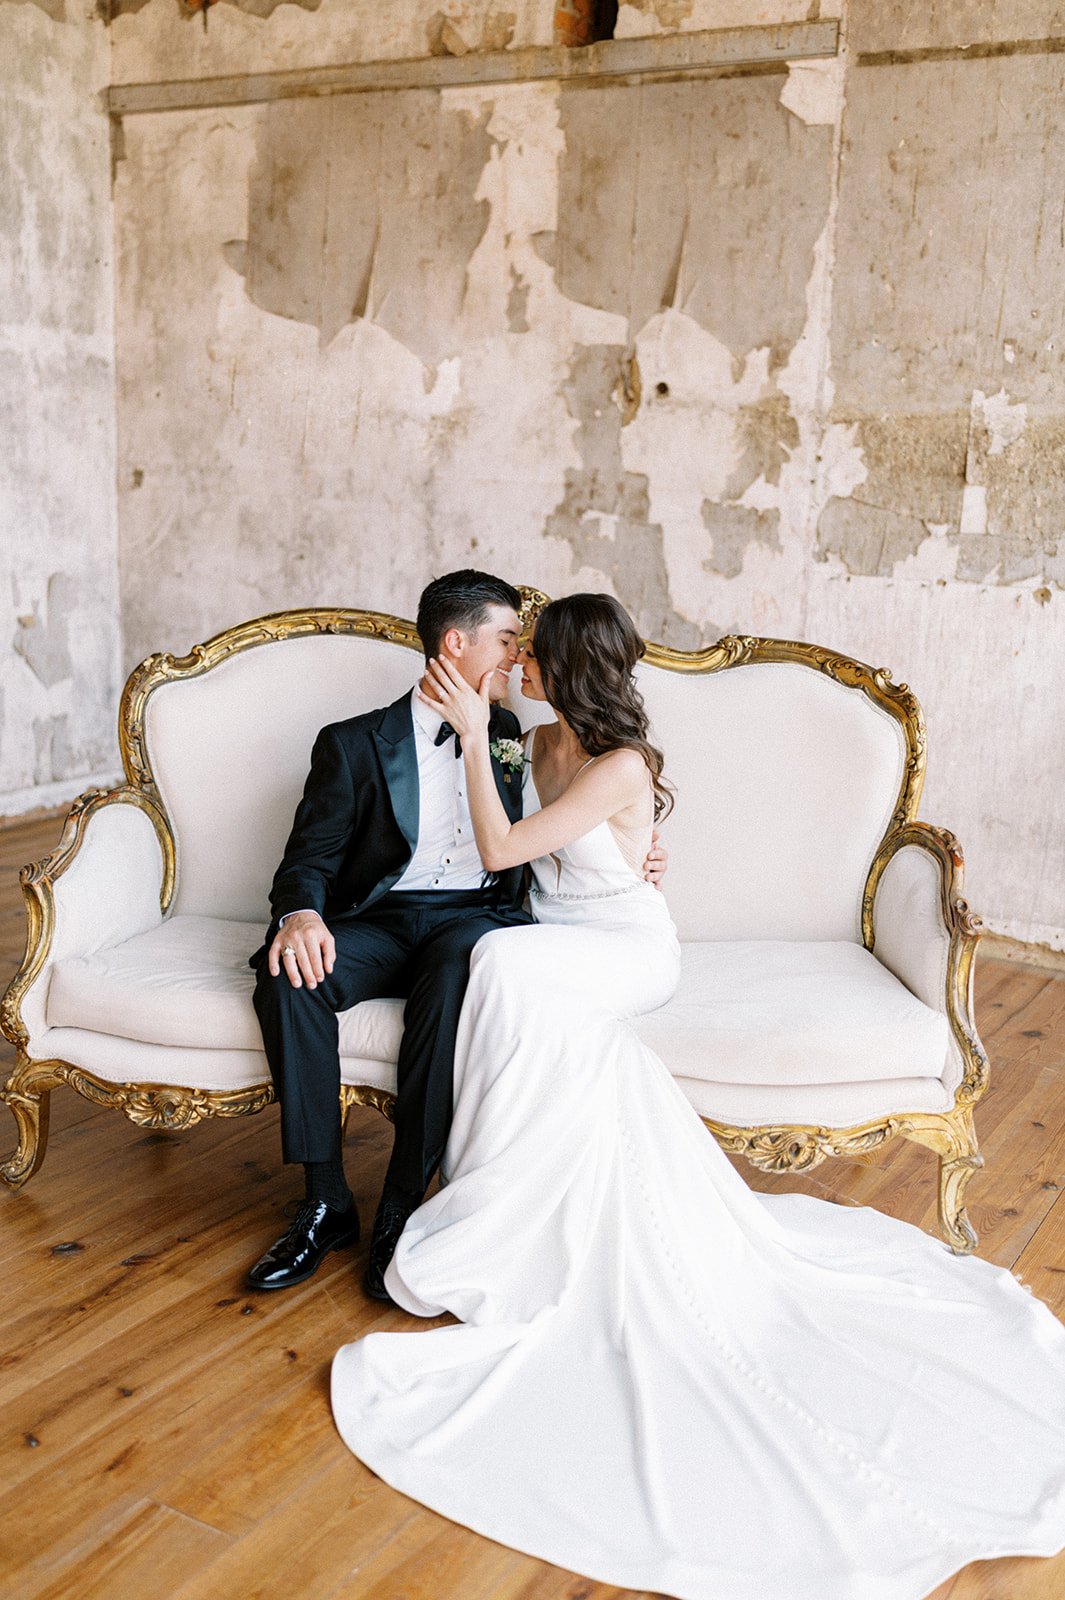 Bride groom kissing on antique vintage loveseat in rustic room